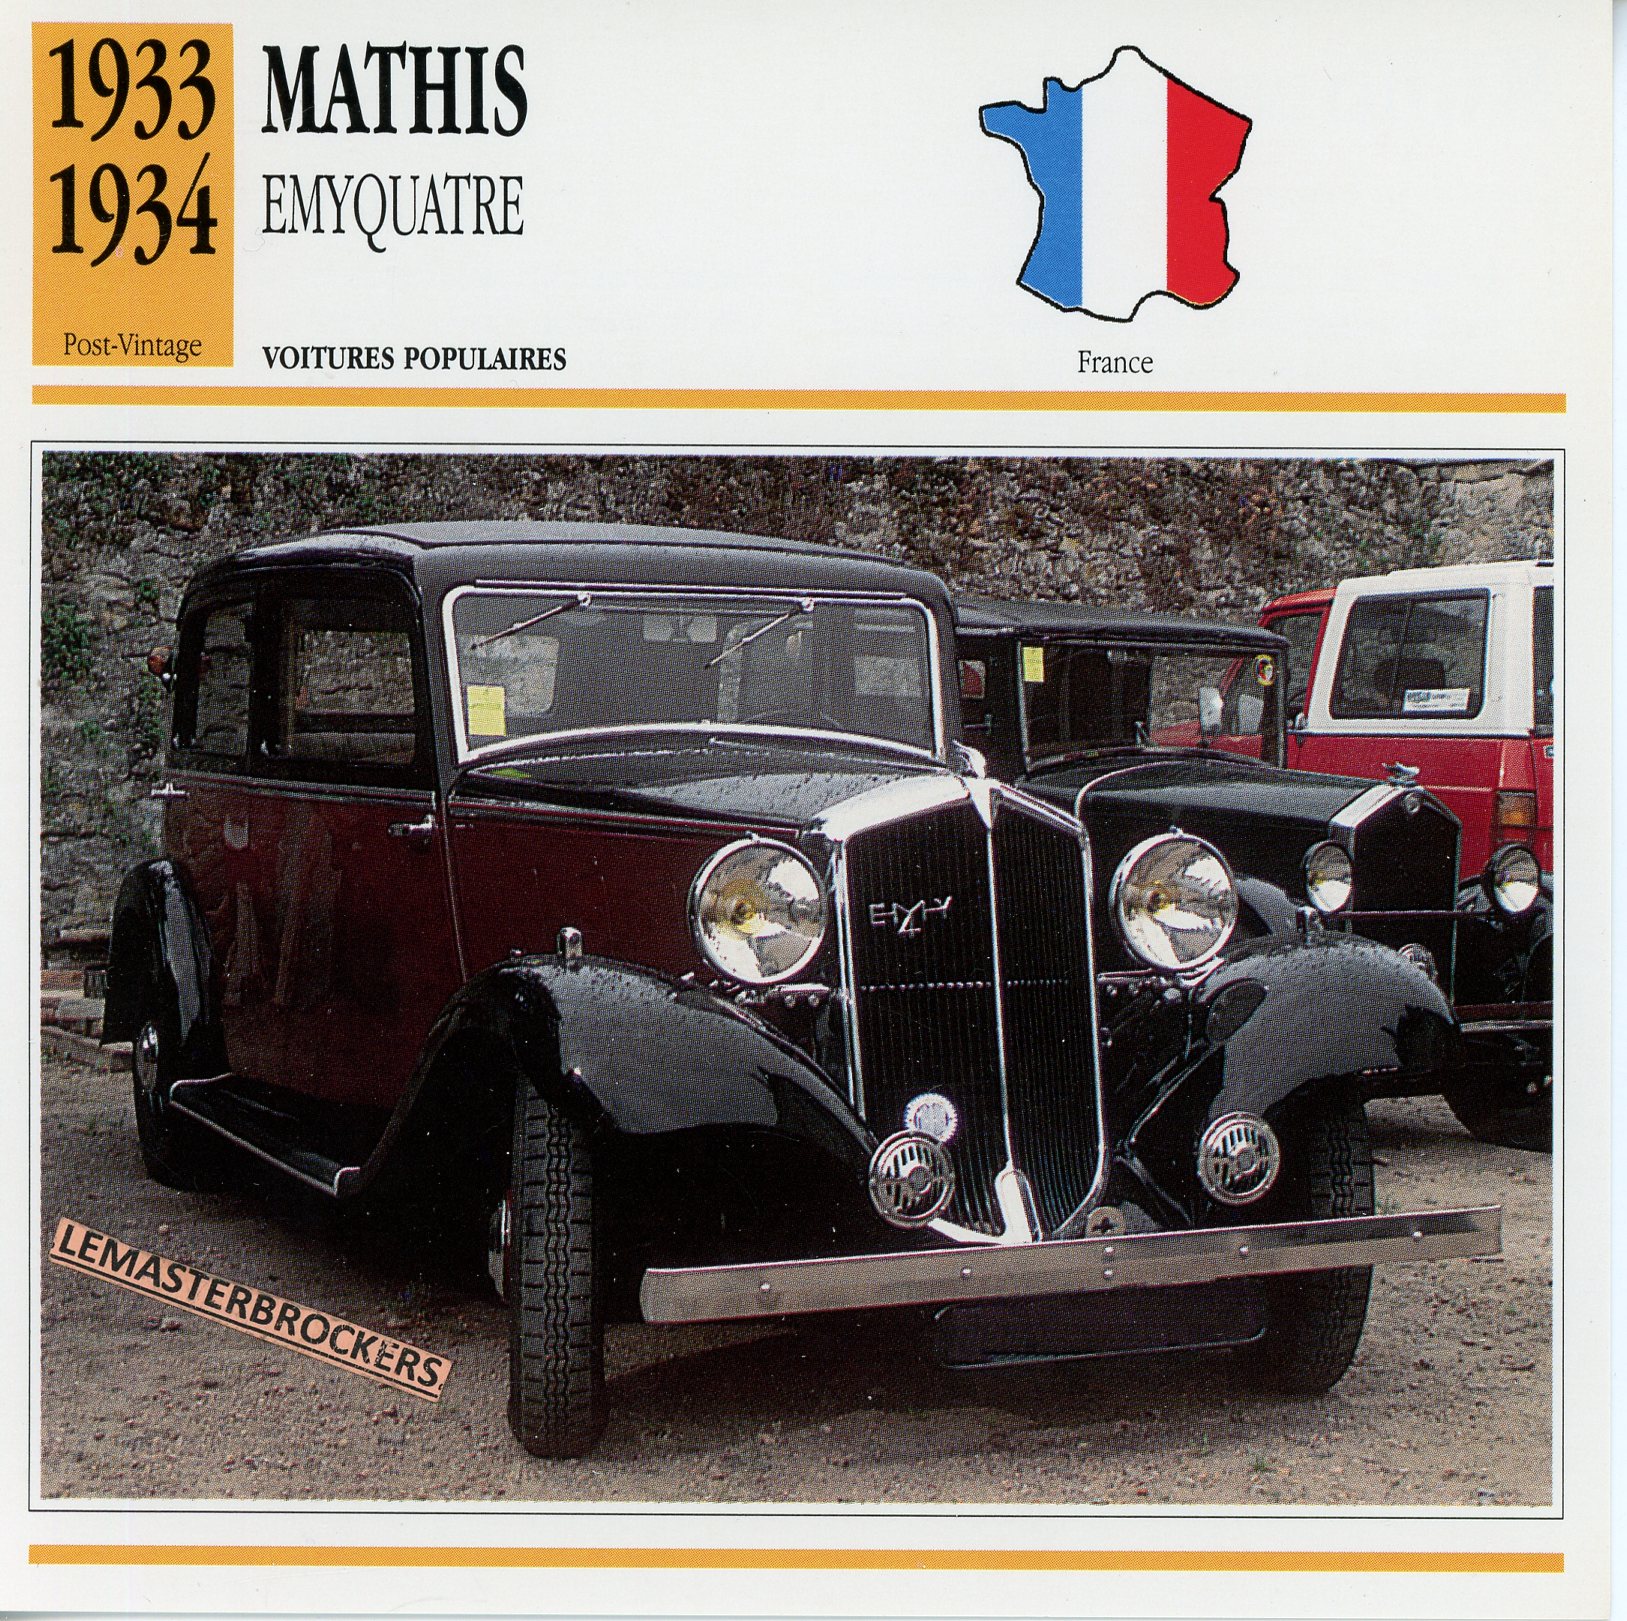 MATHIS EMYQUATRE 1933 1934 - FICHE AUTO ATLAS ÉDITION